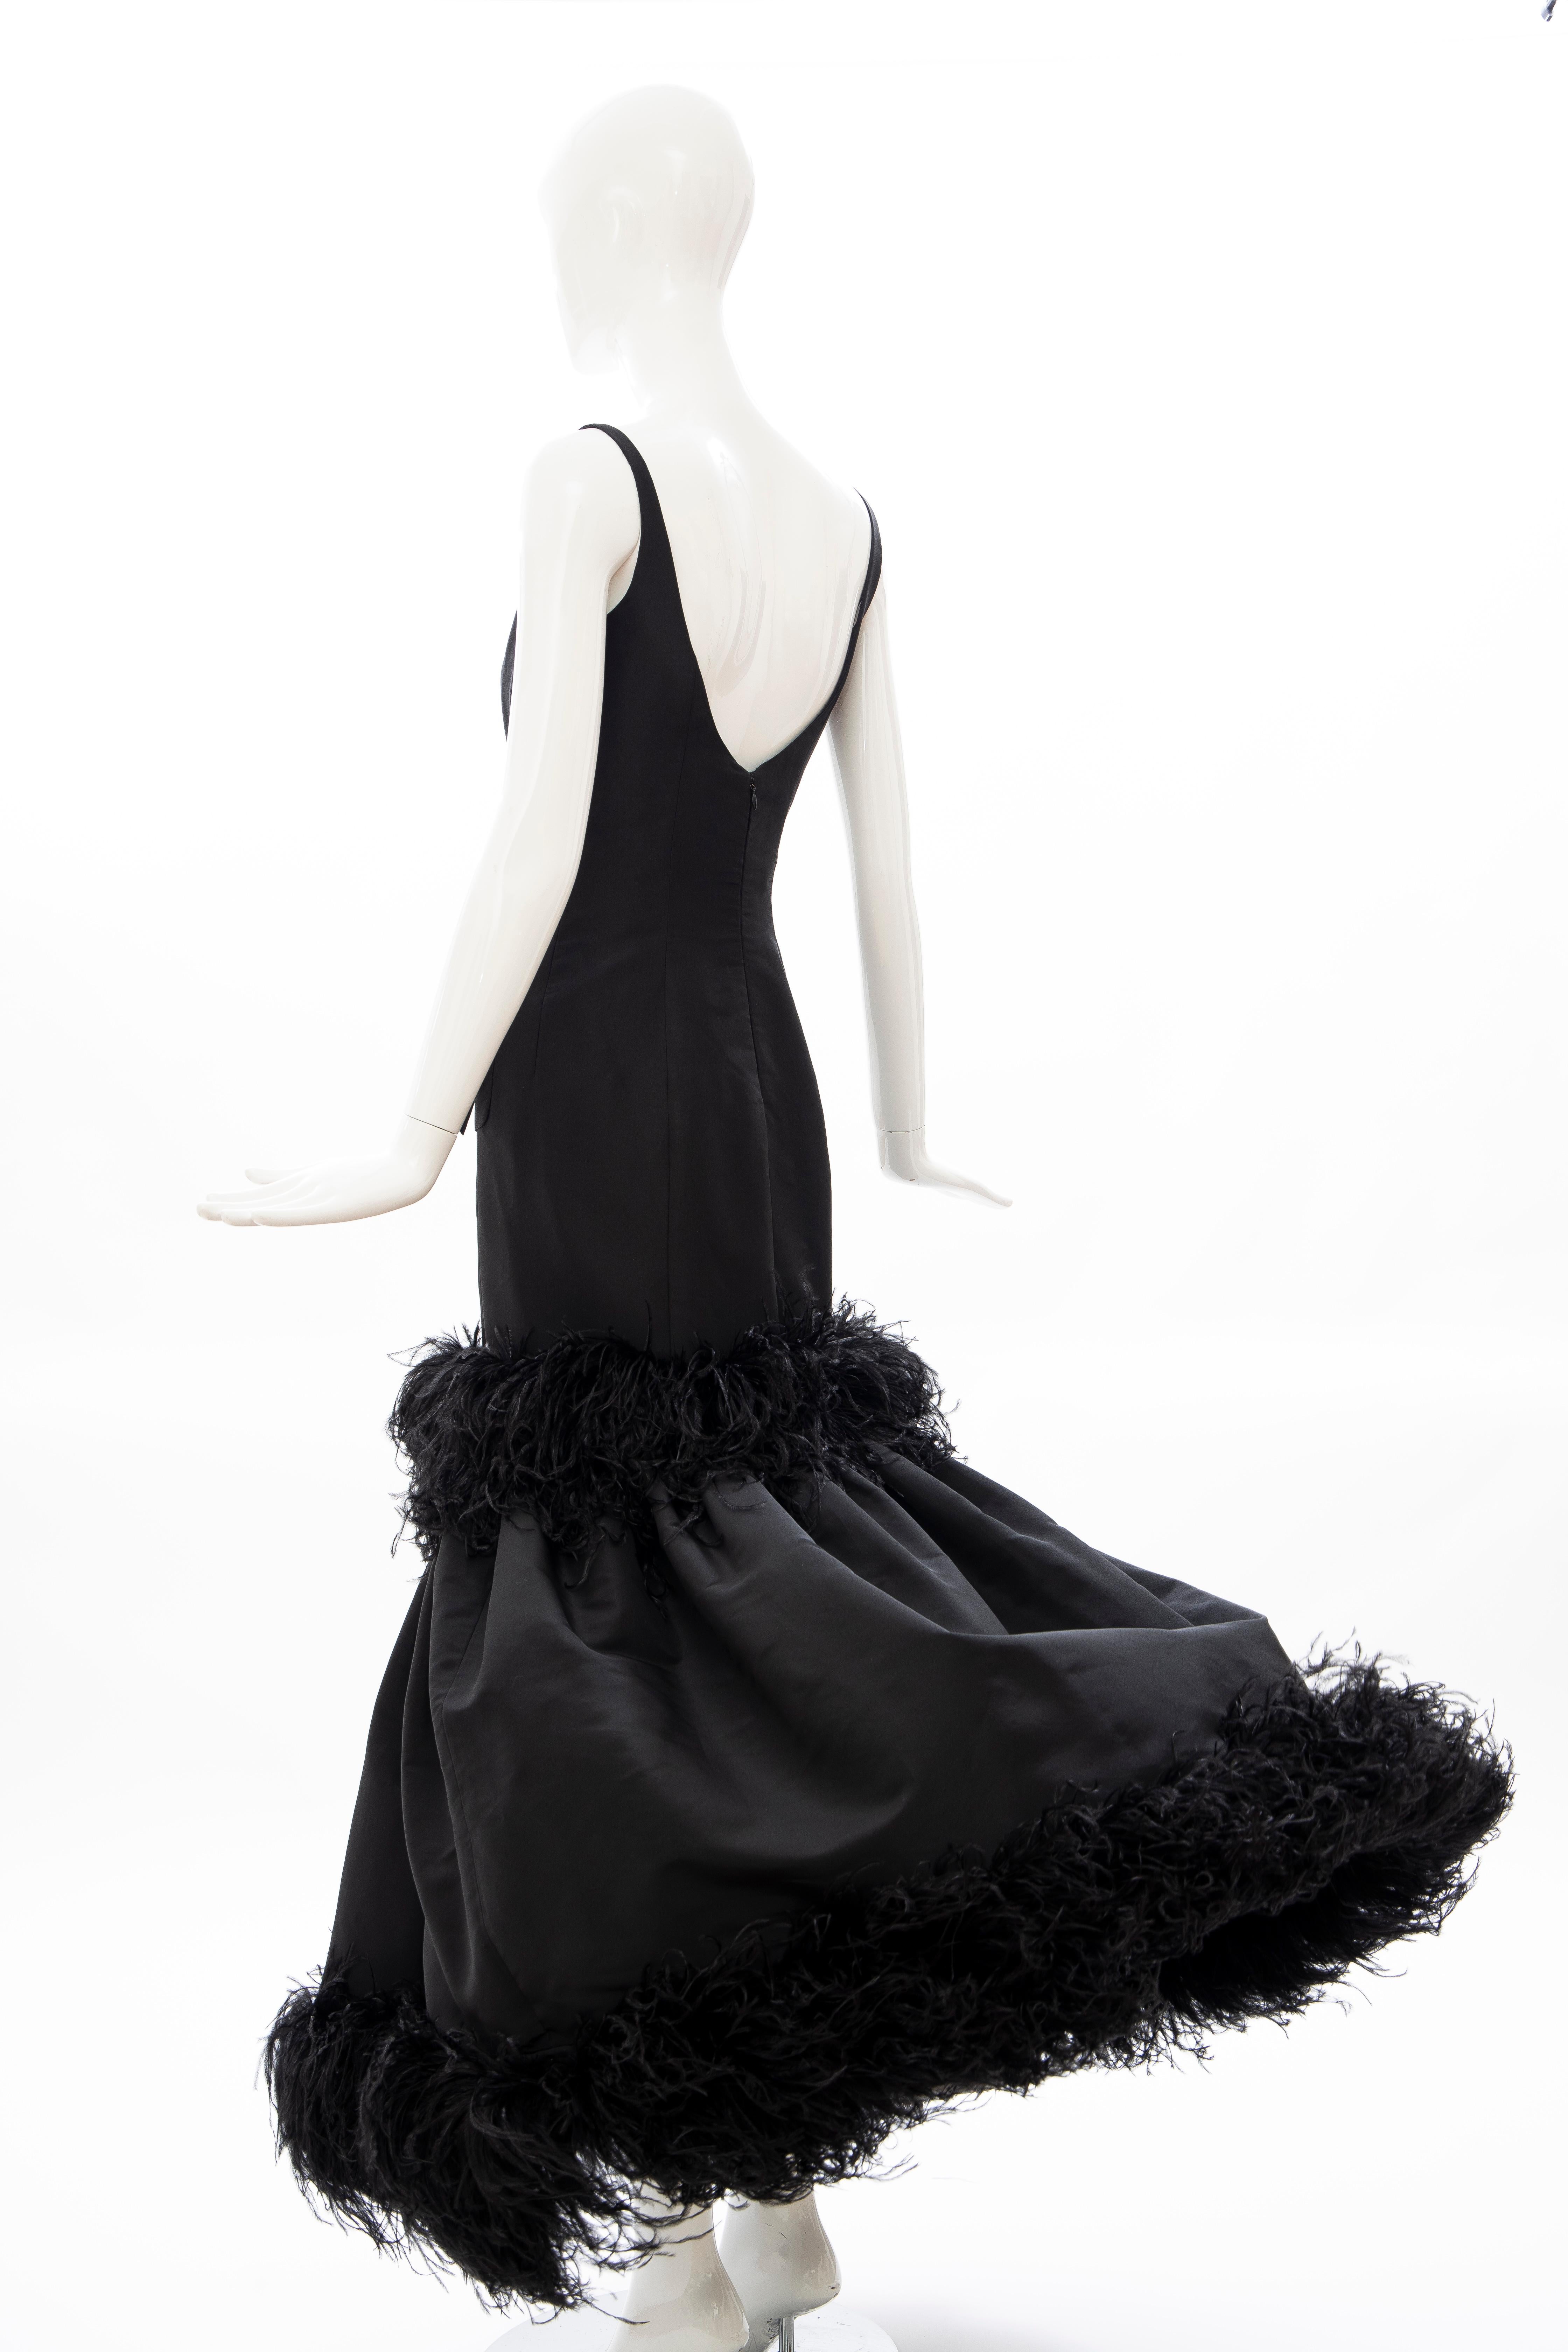 Oscar de La Renta Black Silk Faille Embroidered Feathers Evening Dress, Fall 2004 9